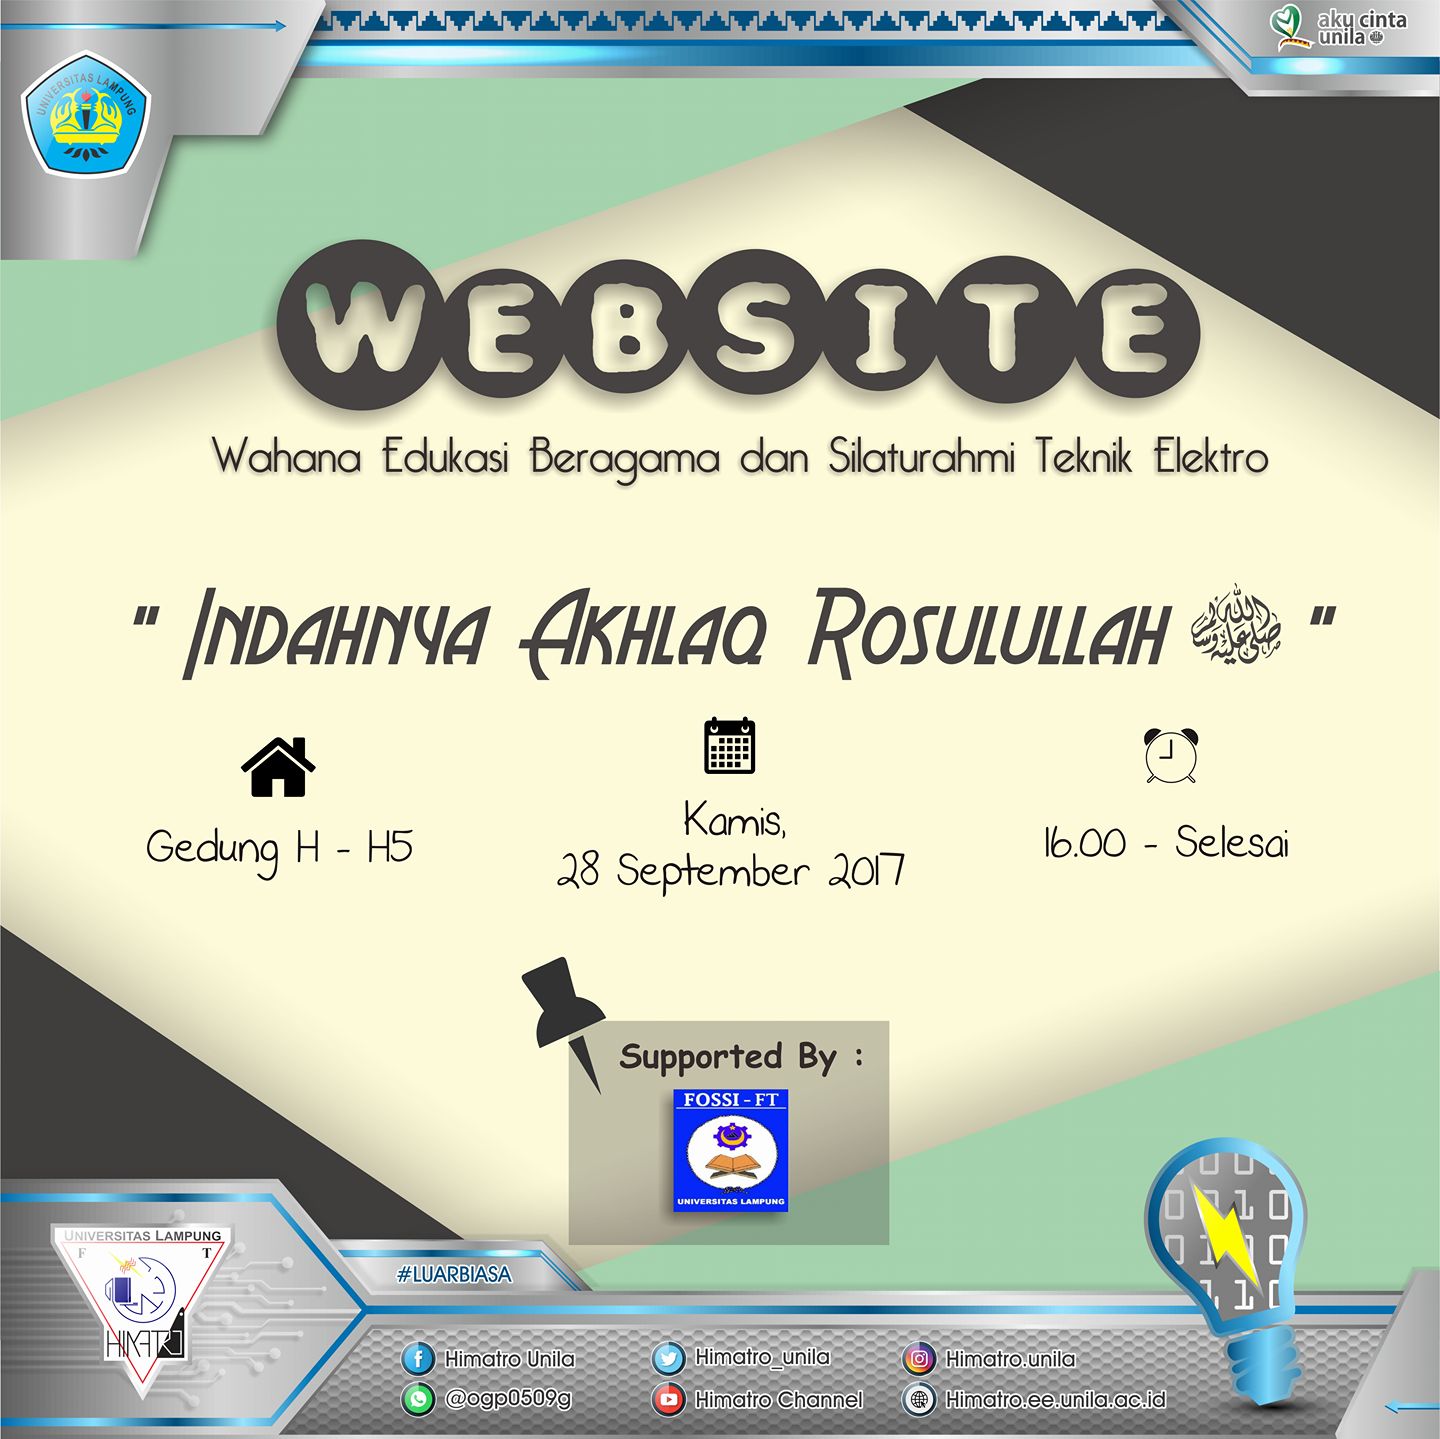 WEBSITE (Wahana Edukasi Beragama dan Silaturahmi Teknik 